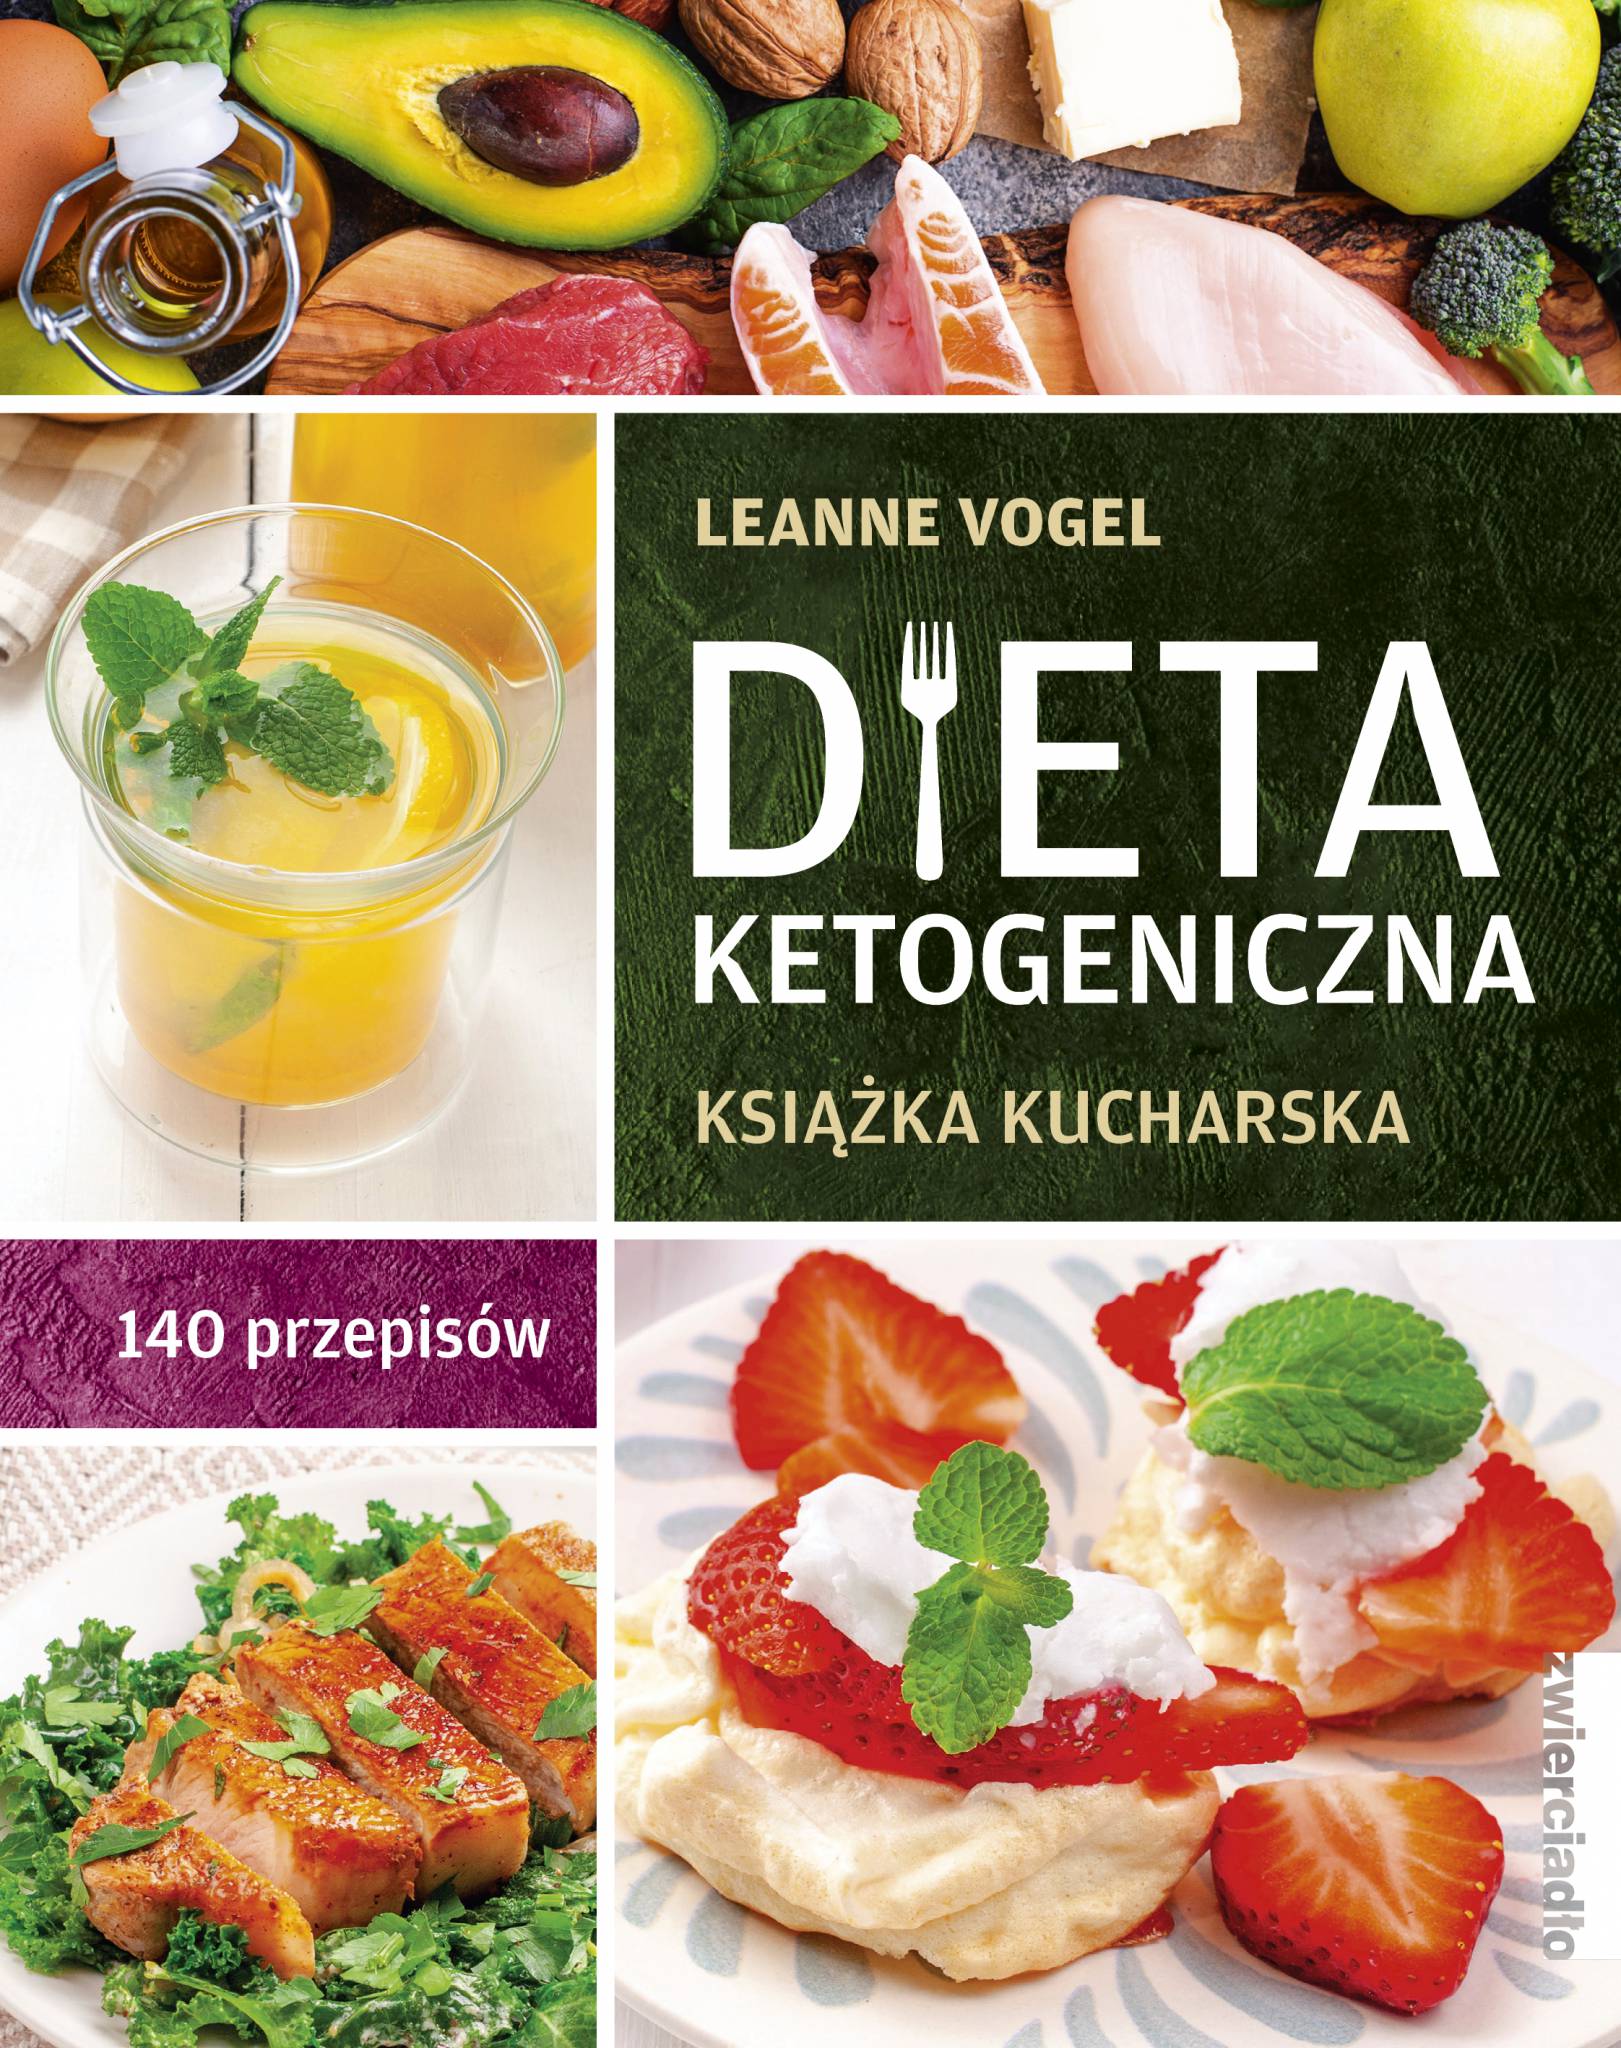 Dieta ketogeniczna Leanne Vogel Zwierciadlo.pl